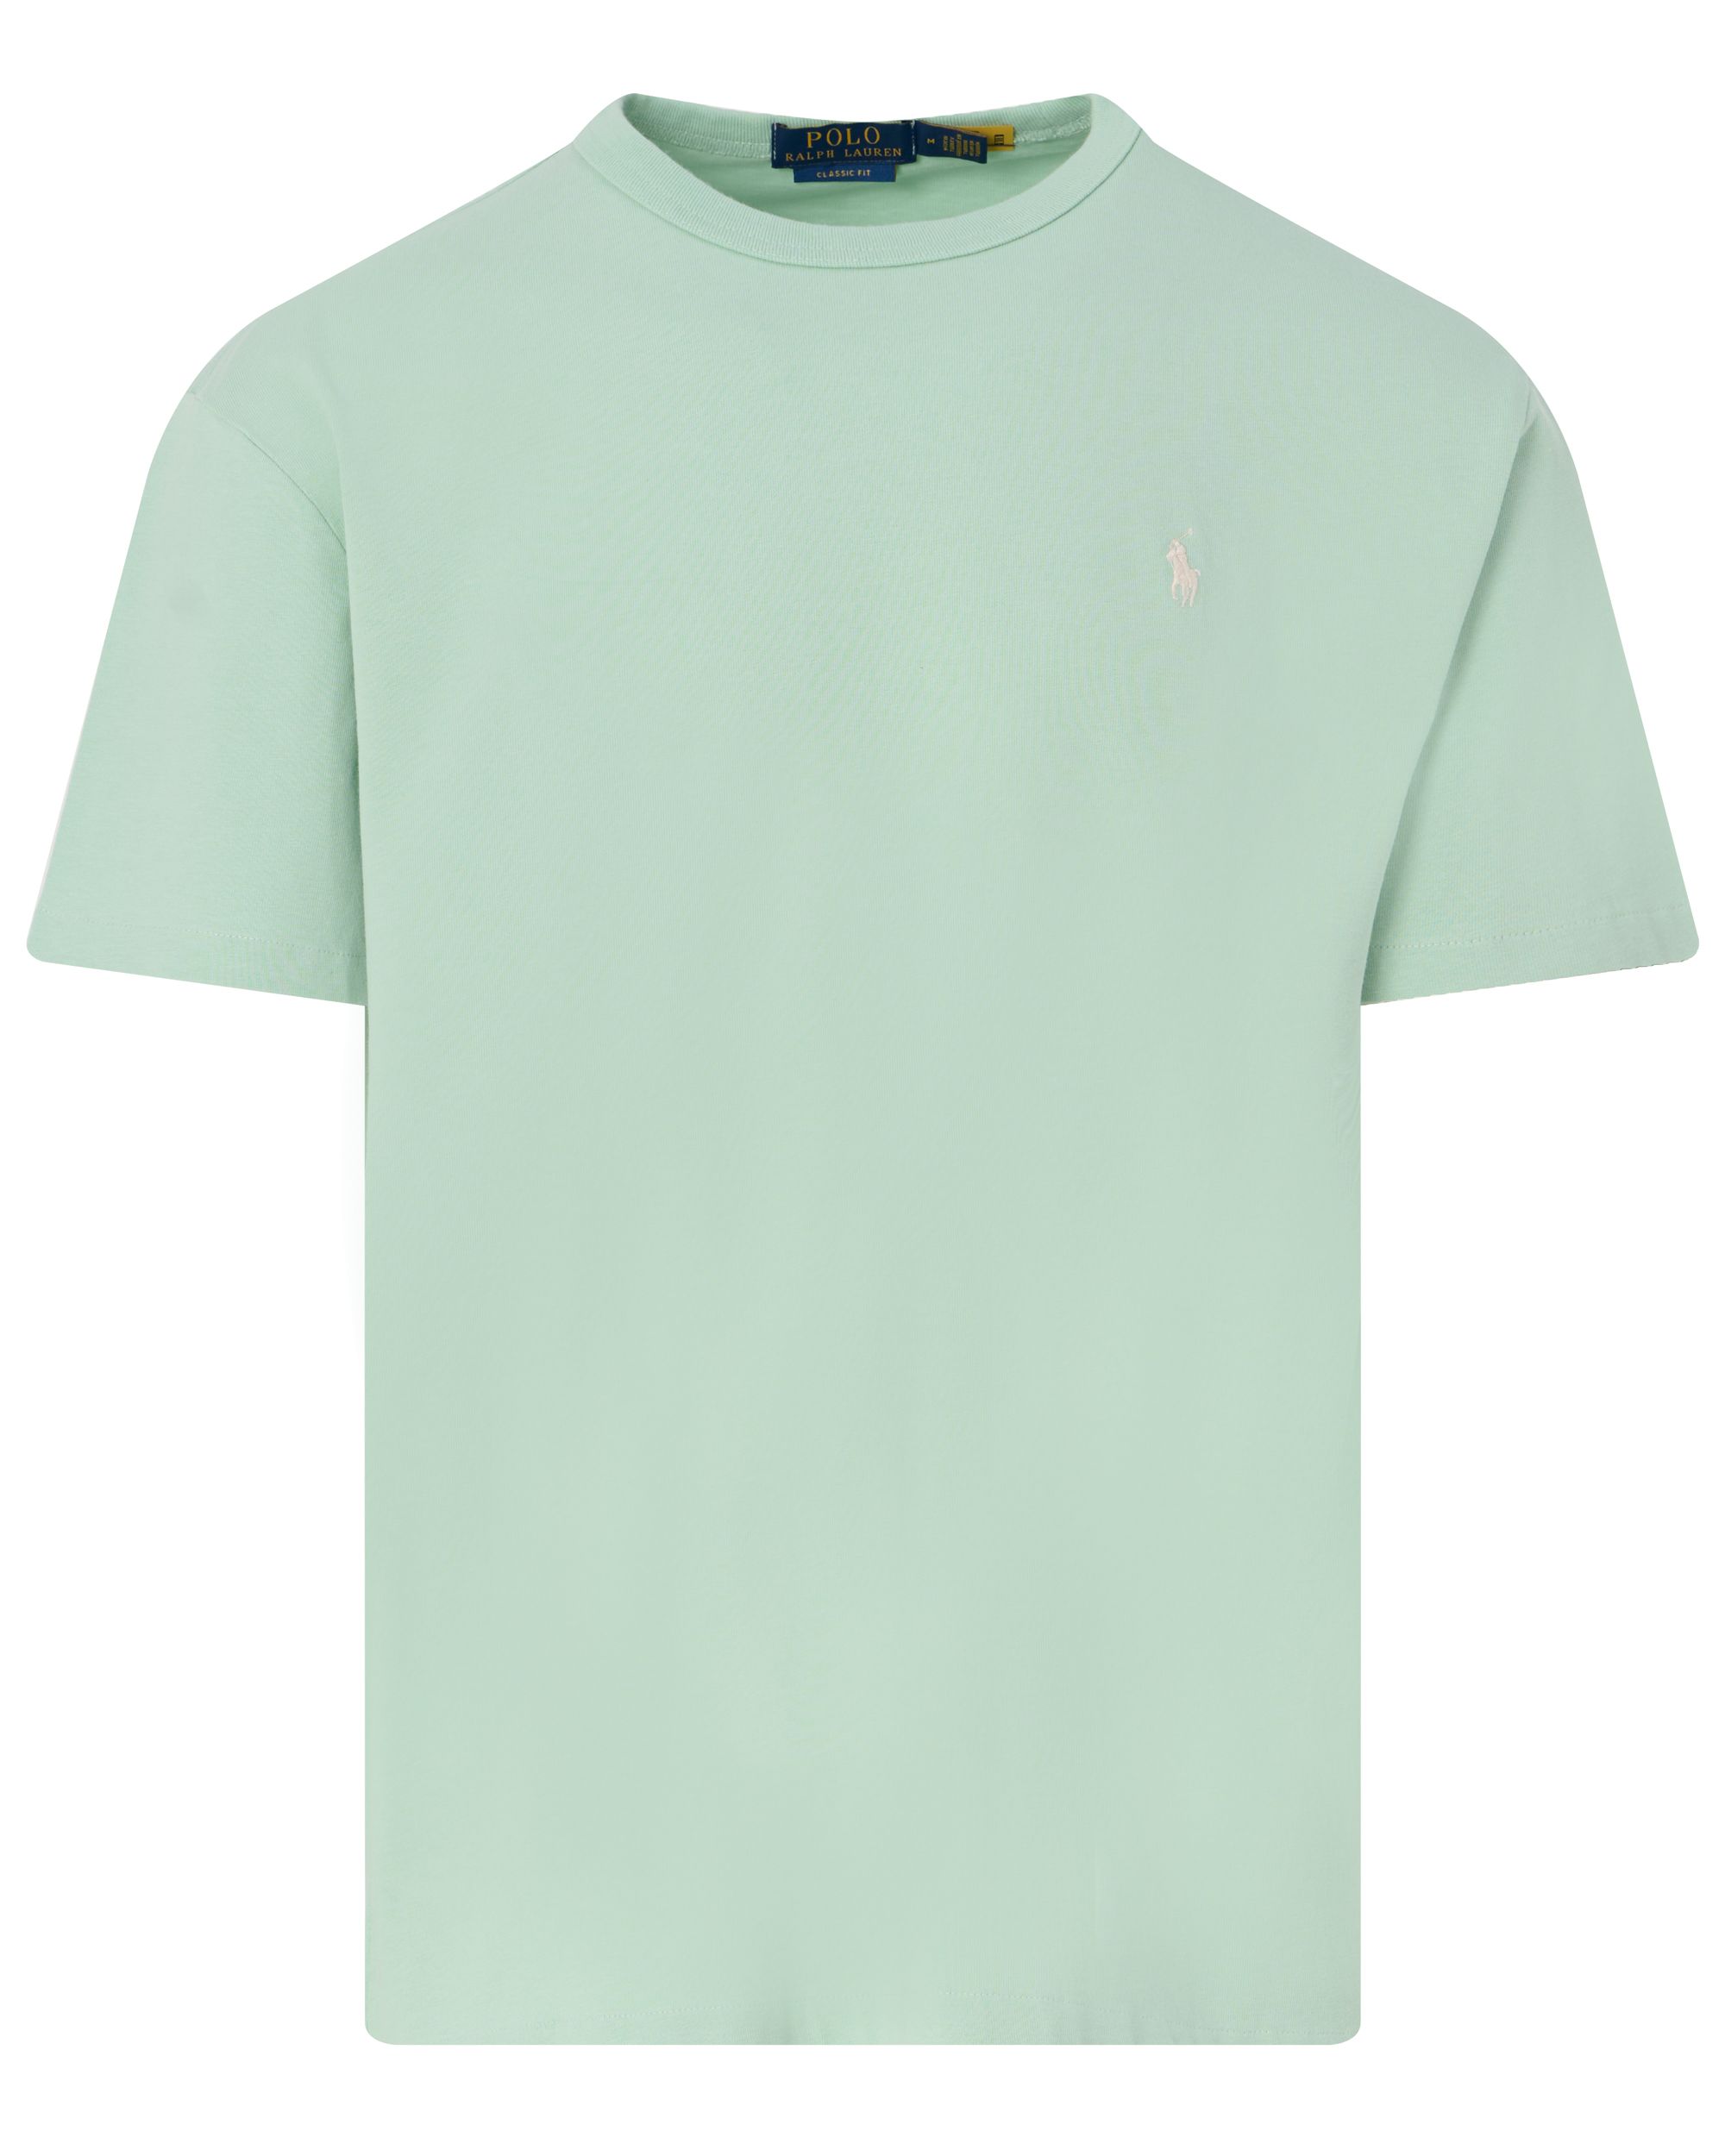 Polo Ralph Lauren T-shirt KM Licht groen 095296-001-L